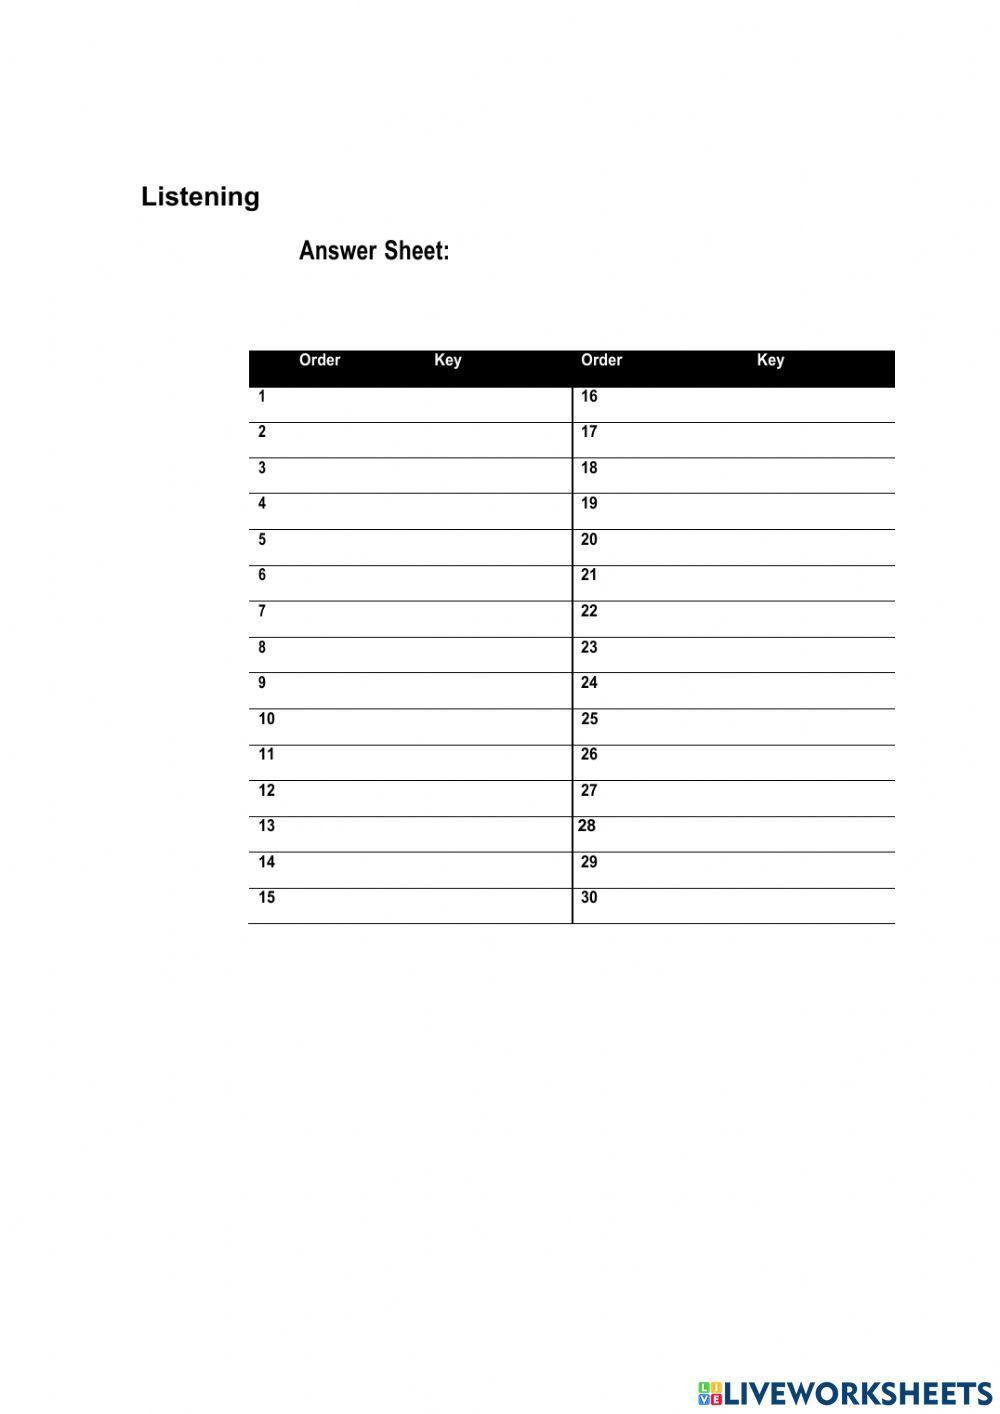 Answer Sheet